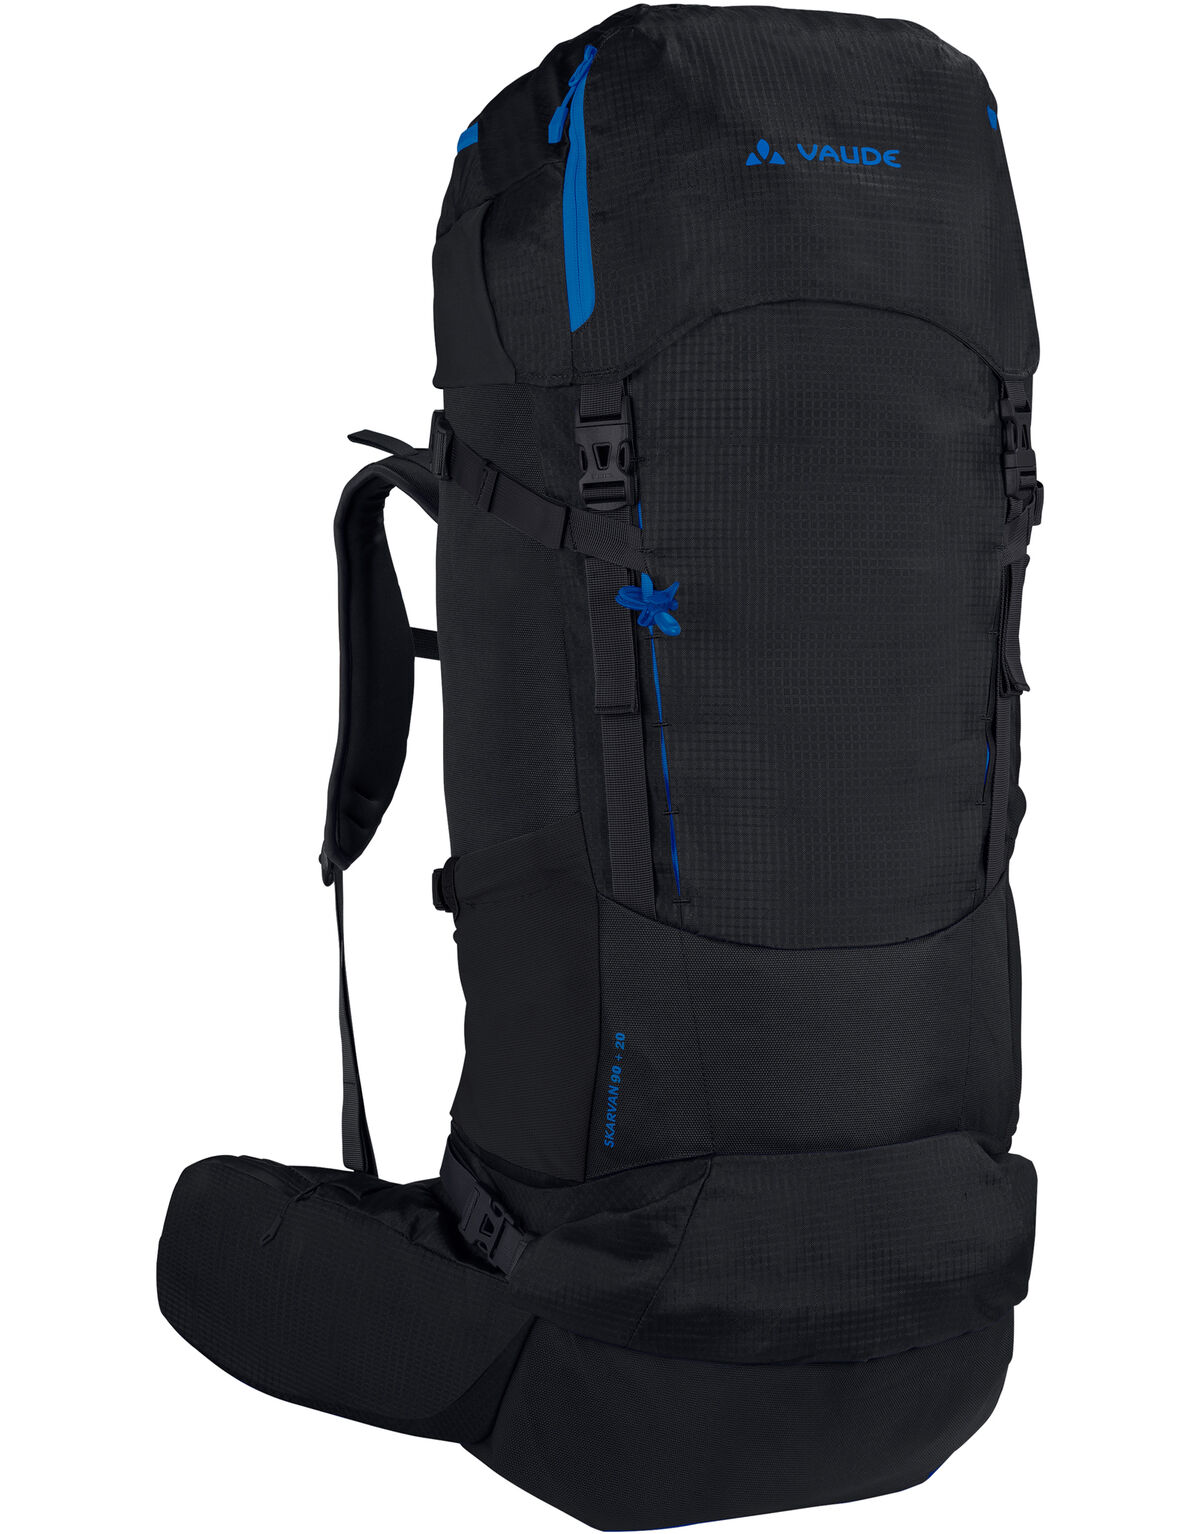 Vaude - Skarvan 90+20 XL - Hiking backpack